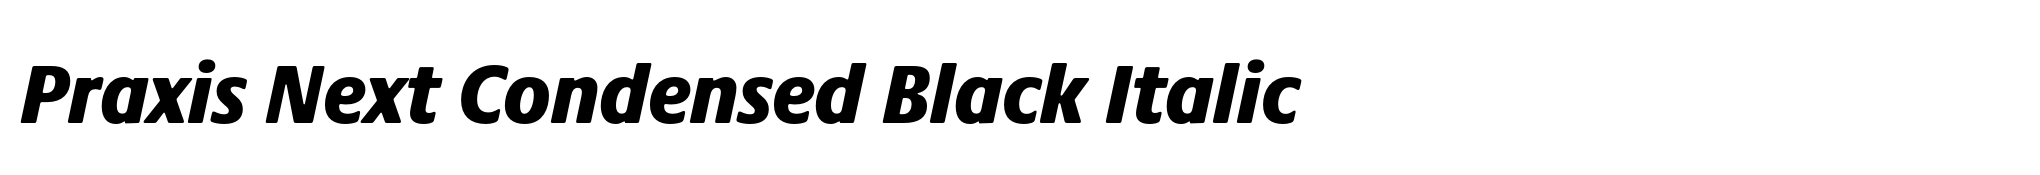 Praxis Next Condensed Black Italic image